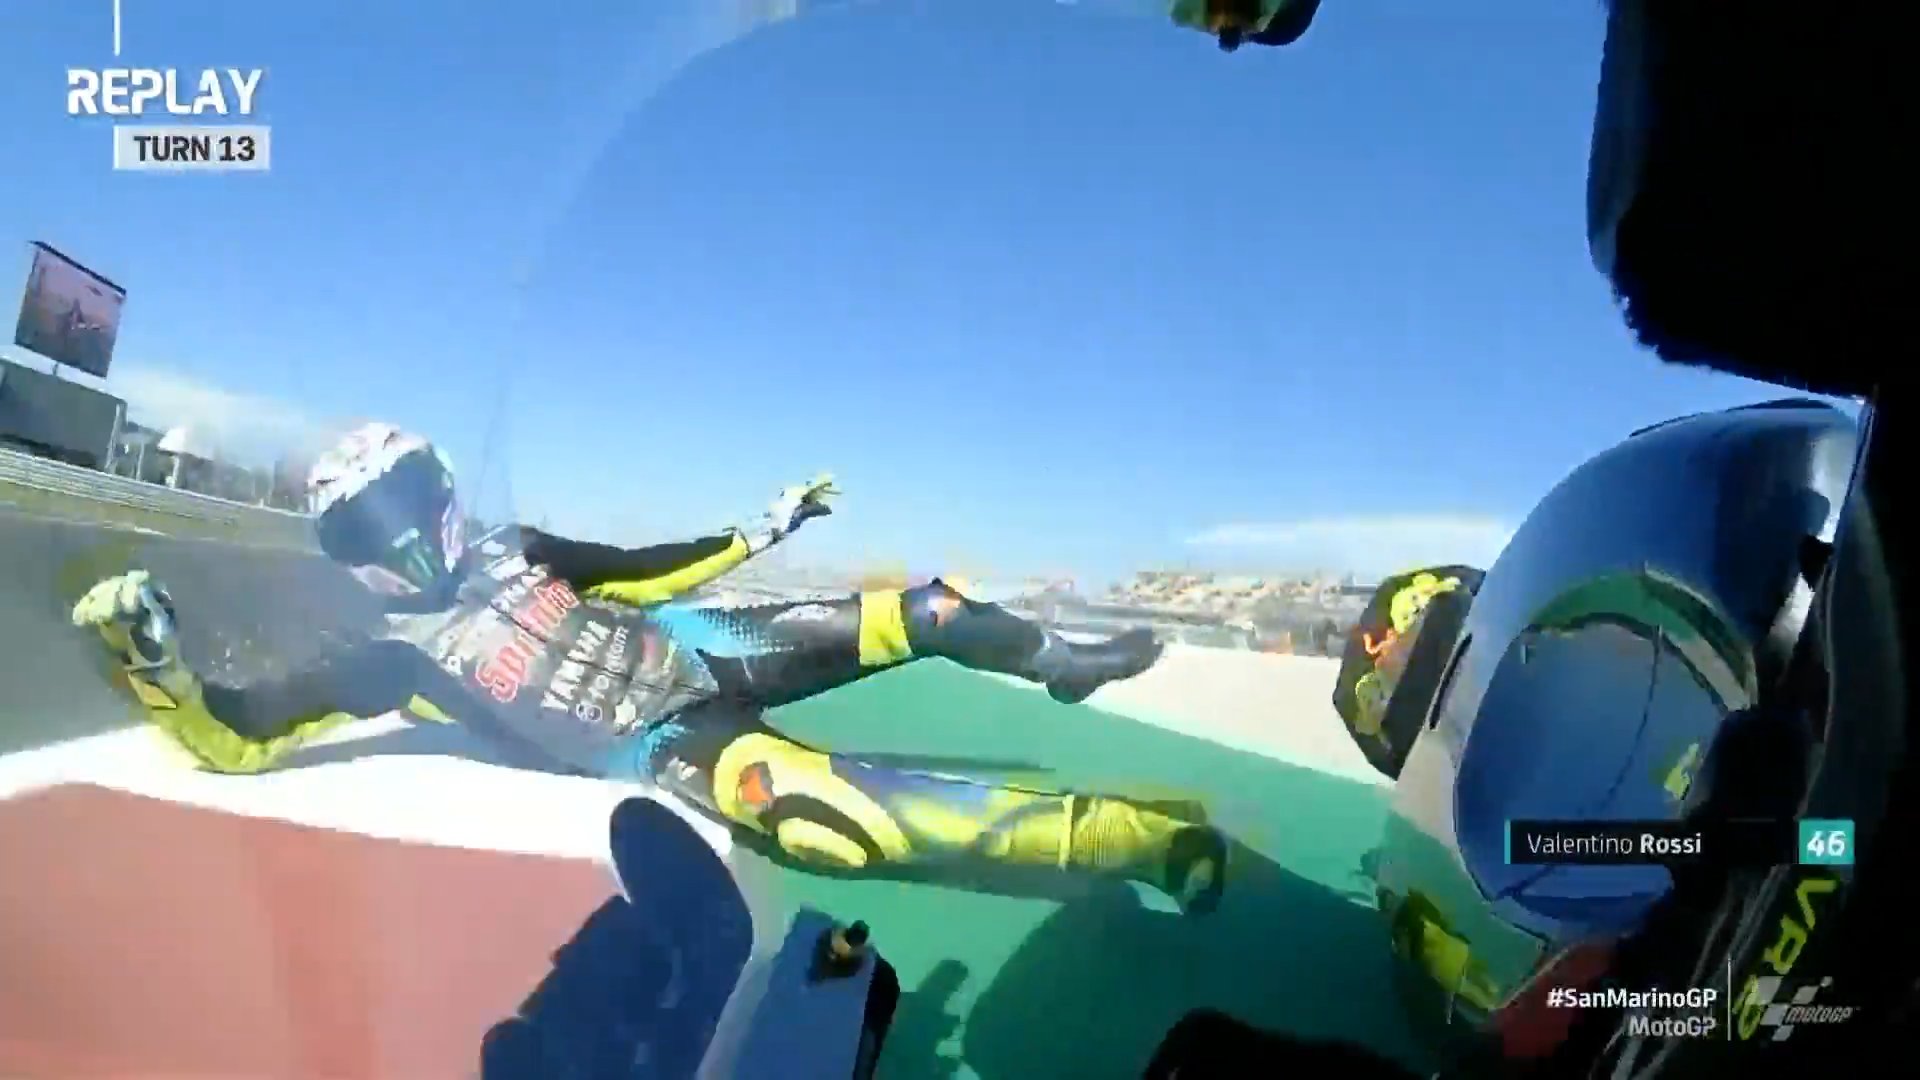 La caduta di Valentino Rossi durante le prove libere del Gran Premio di San Marino a Misano Adriatico